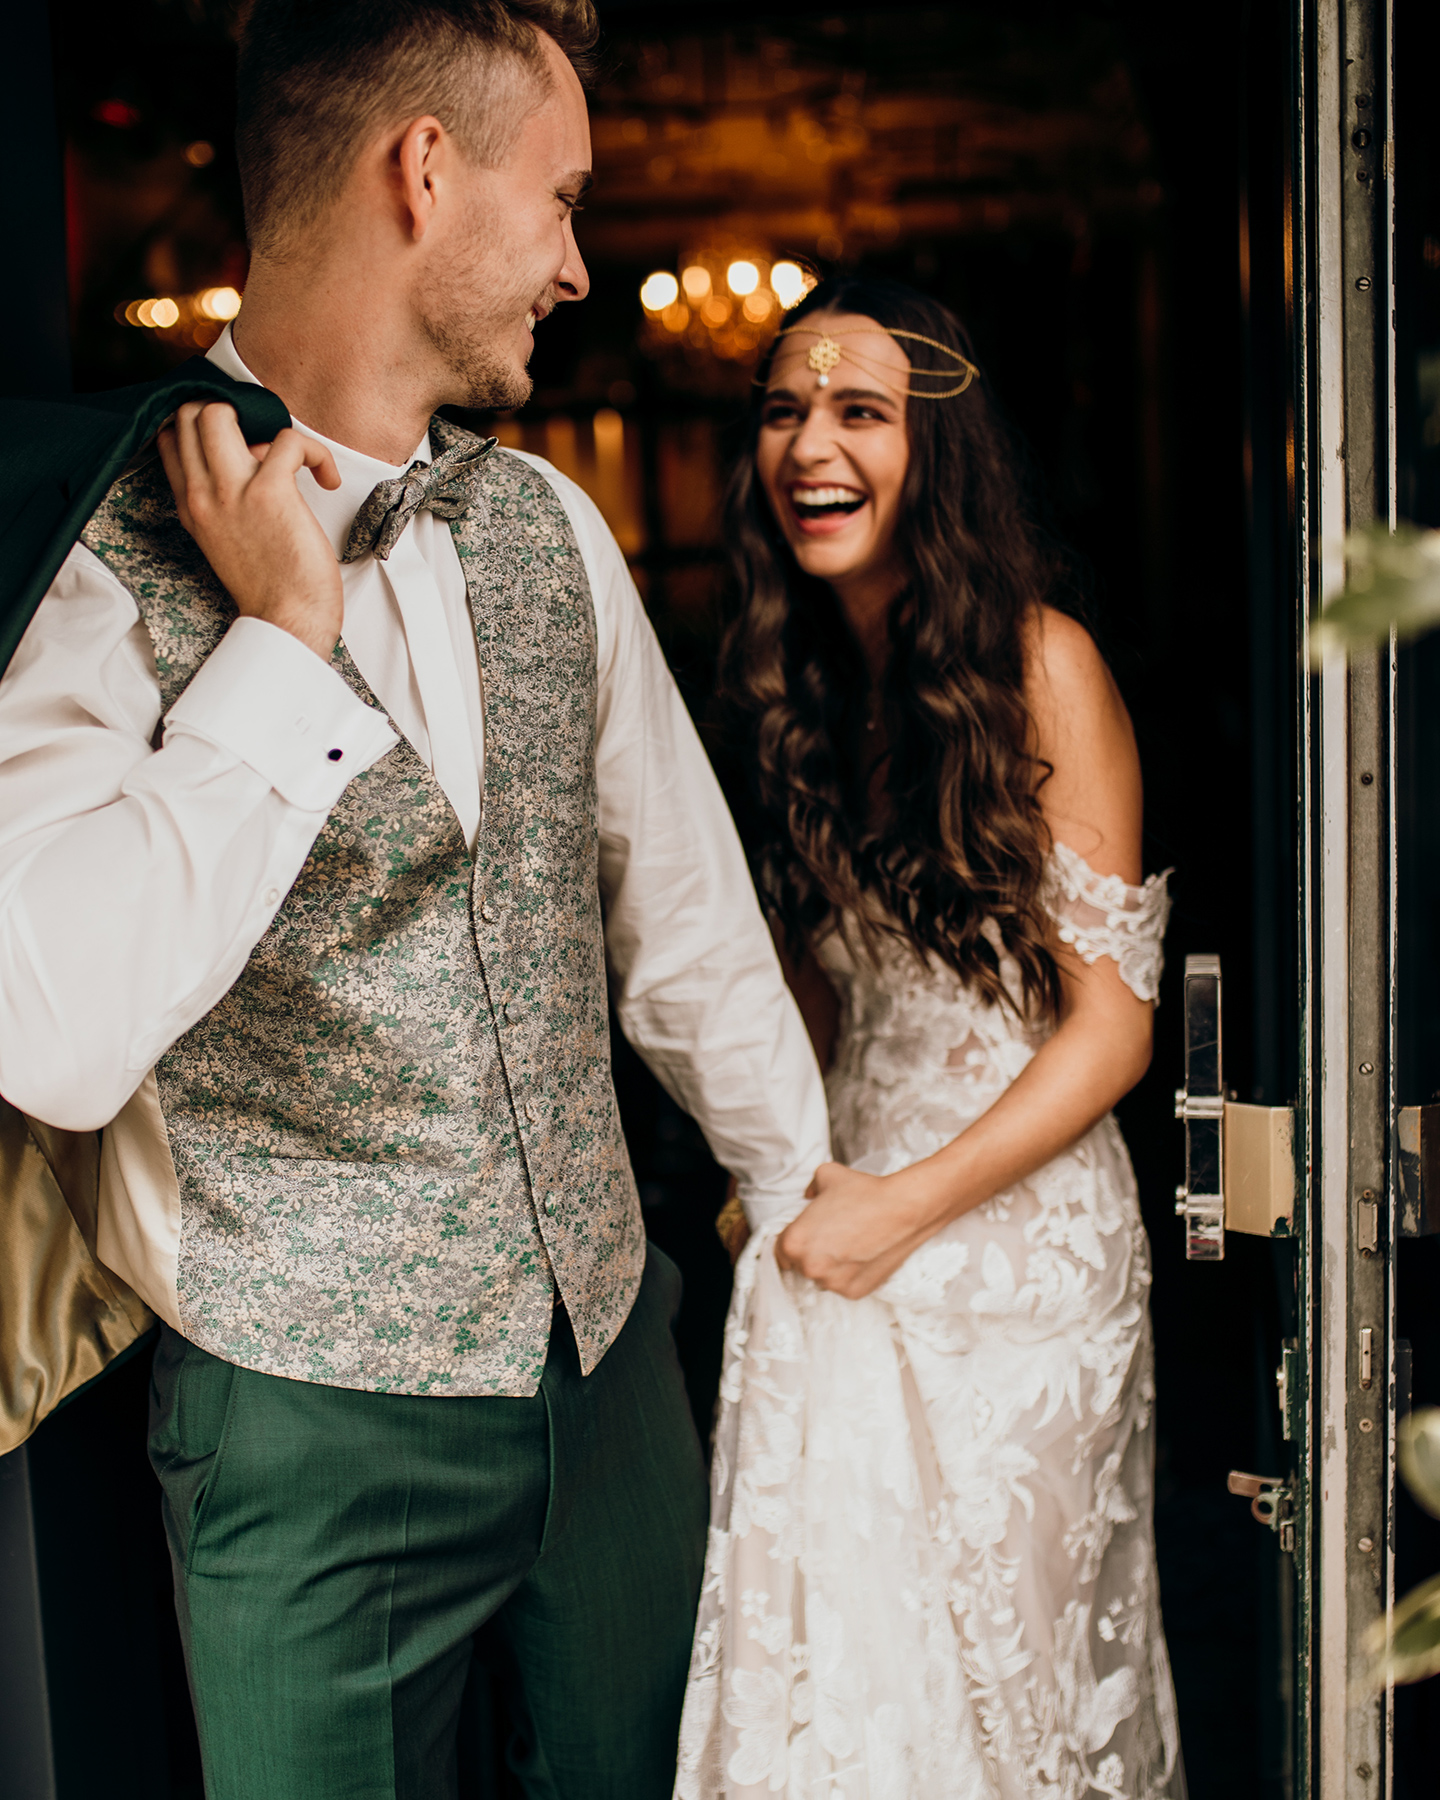 Das Brautpaar tritt lachend aus der Tür hinaus ins Freie. 